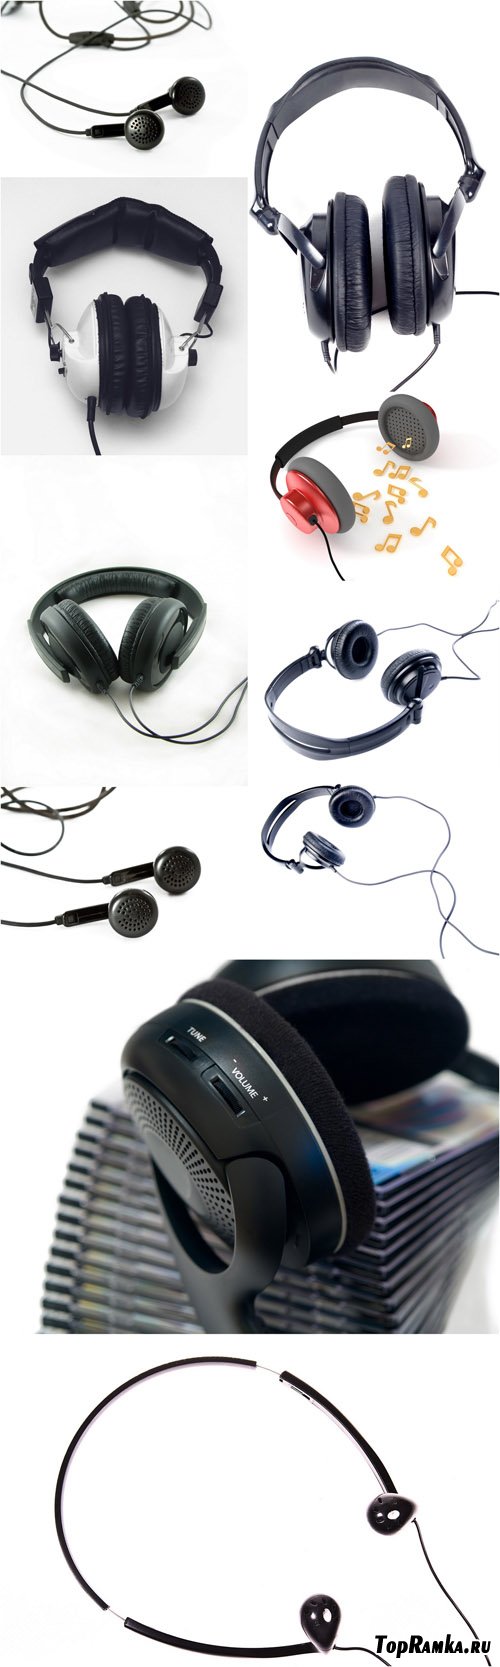 Photo Cliparts - Headphones